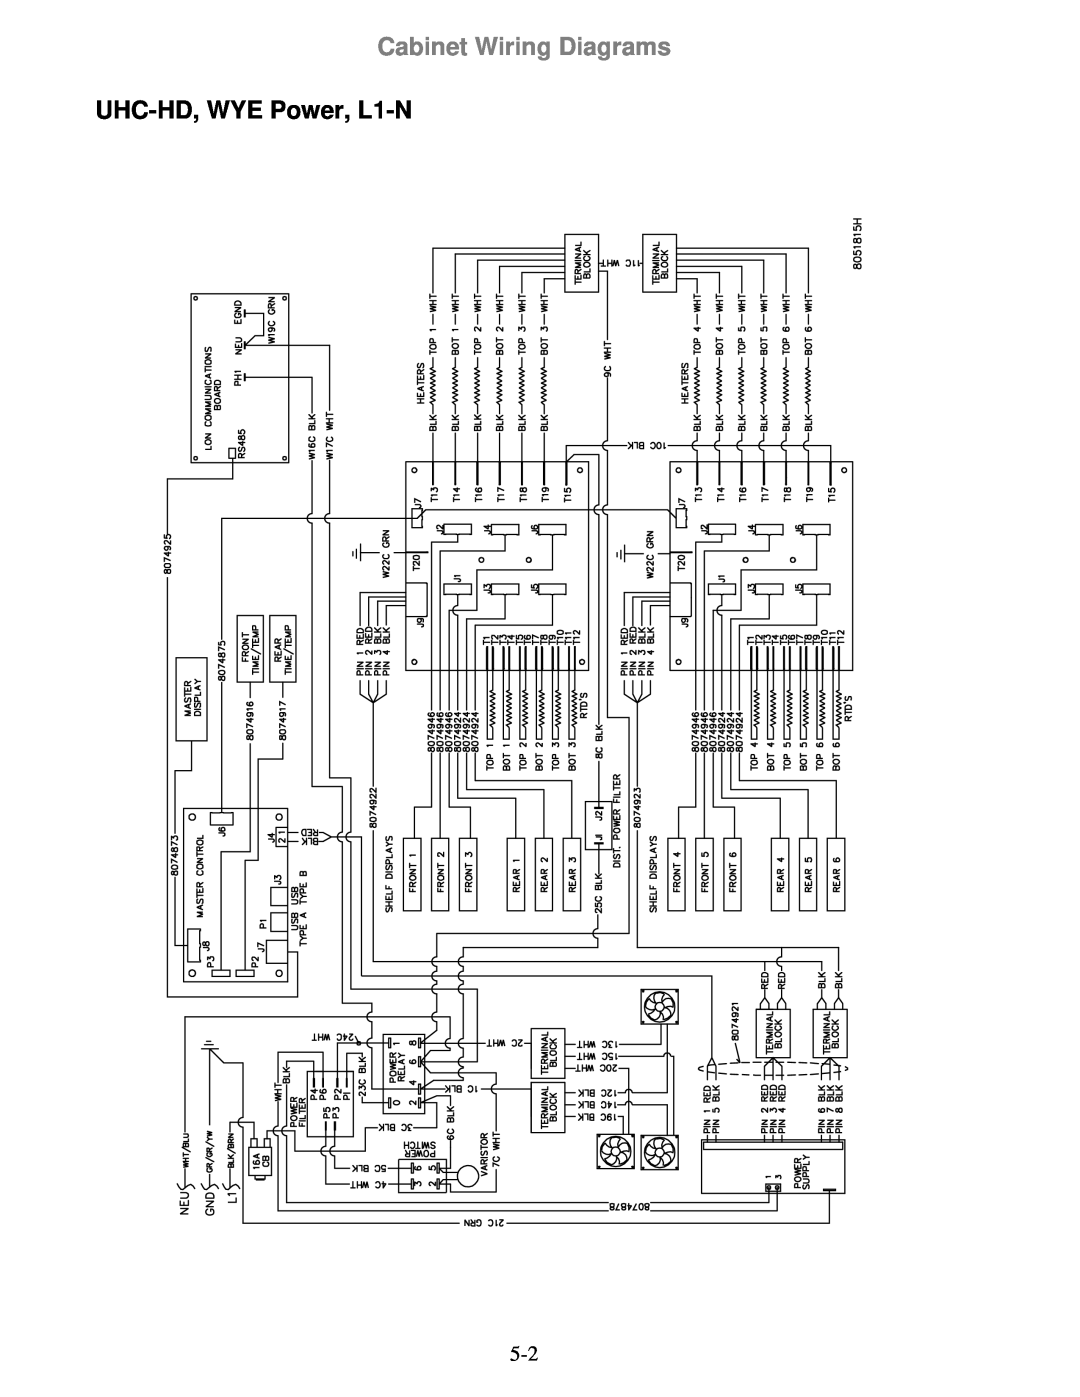 Frymaster manual UHC-HD, WYE Power, L1-N, Cabinet Wiring Diagrams 